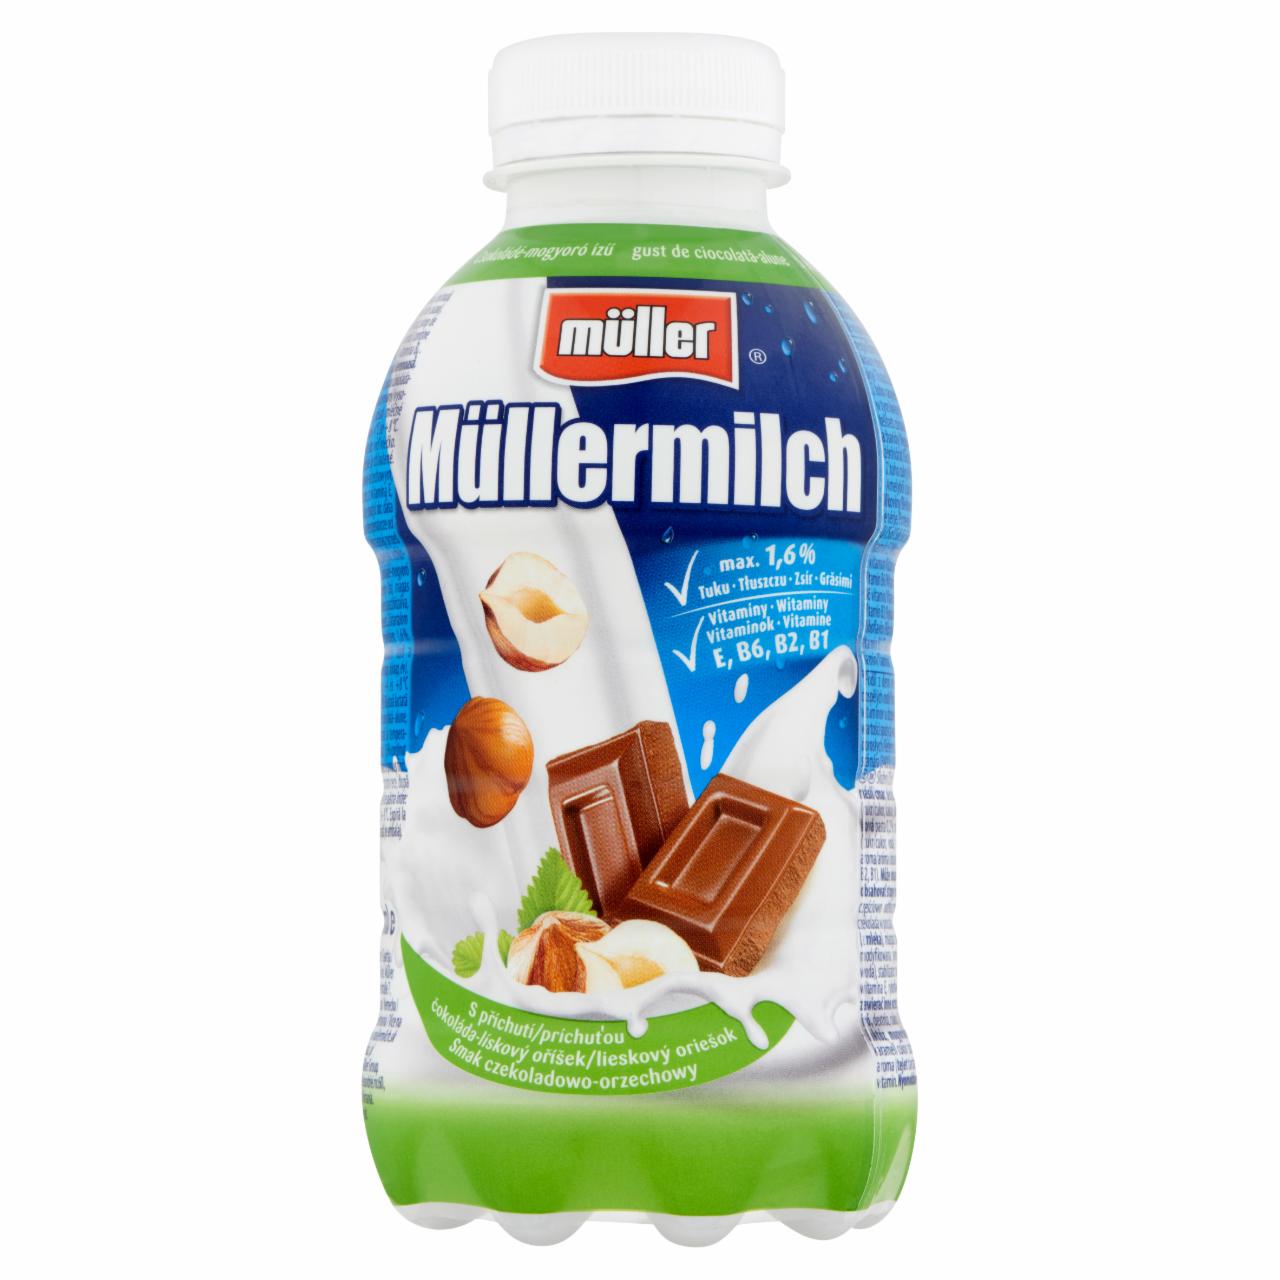 Képek - Müller Müllermilch csokoládé-mogyoró ízű zsírszegény ital 377 ml